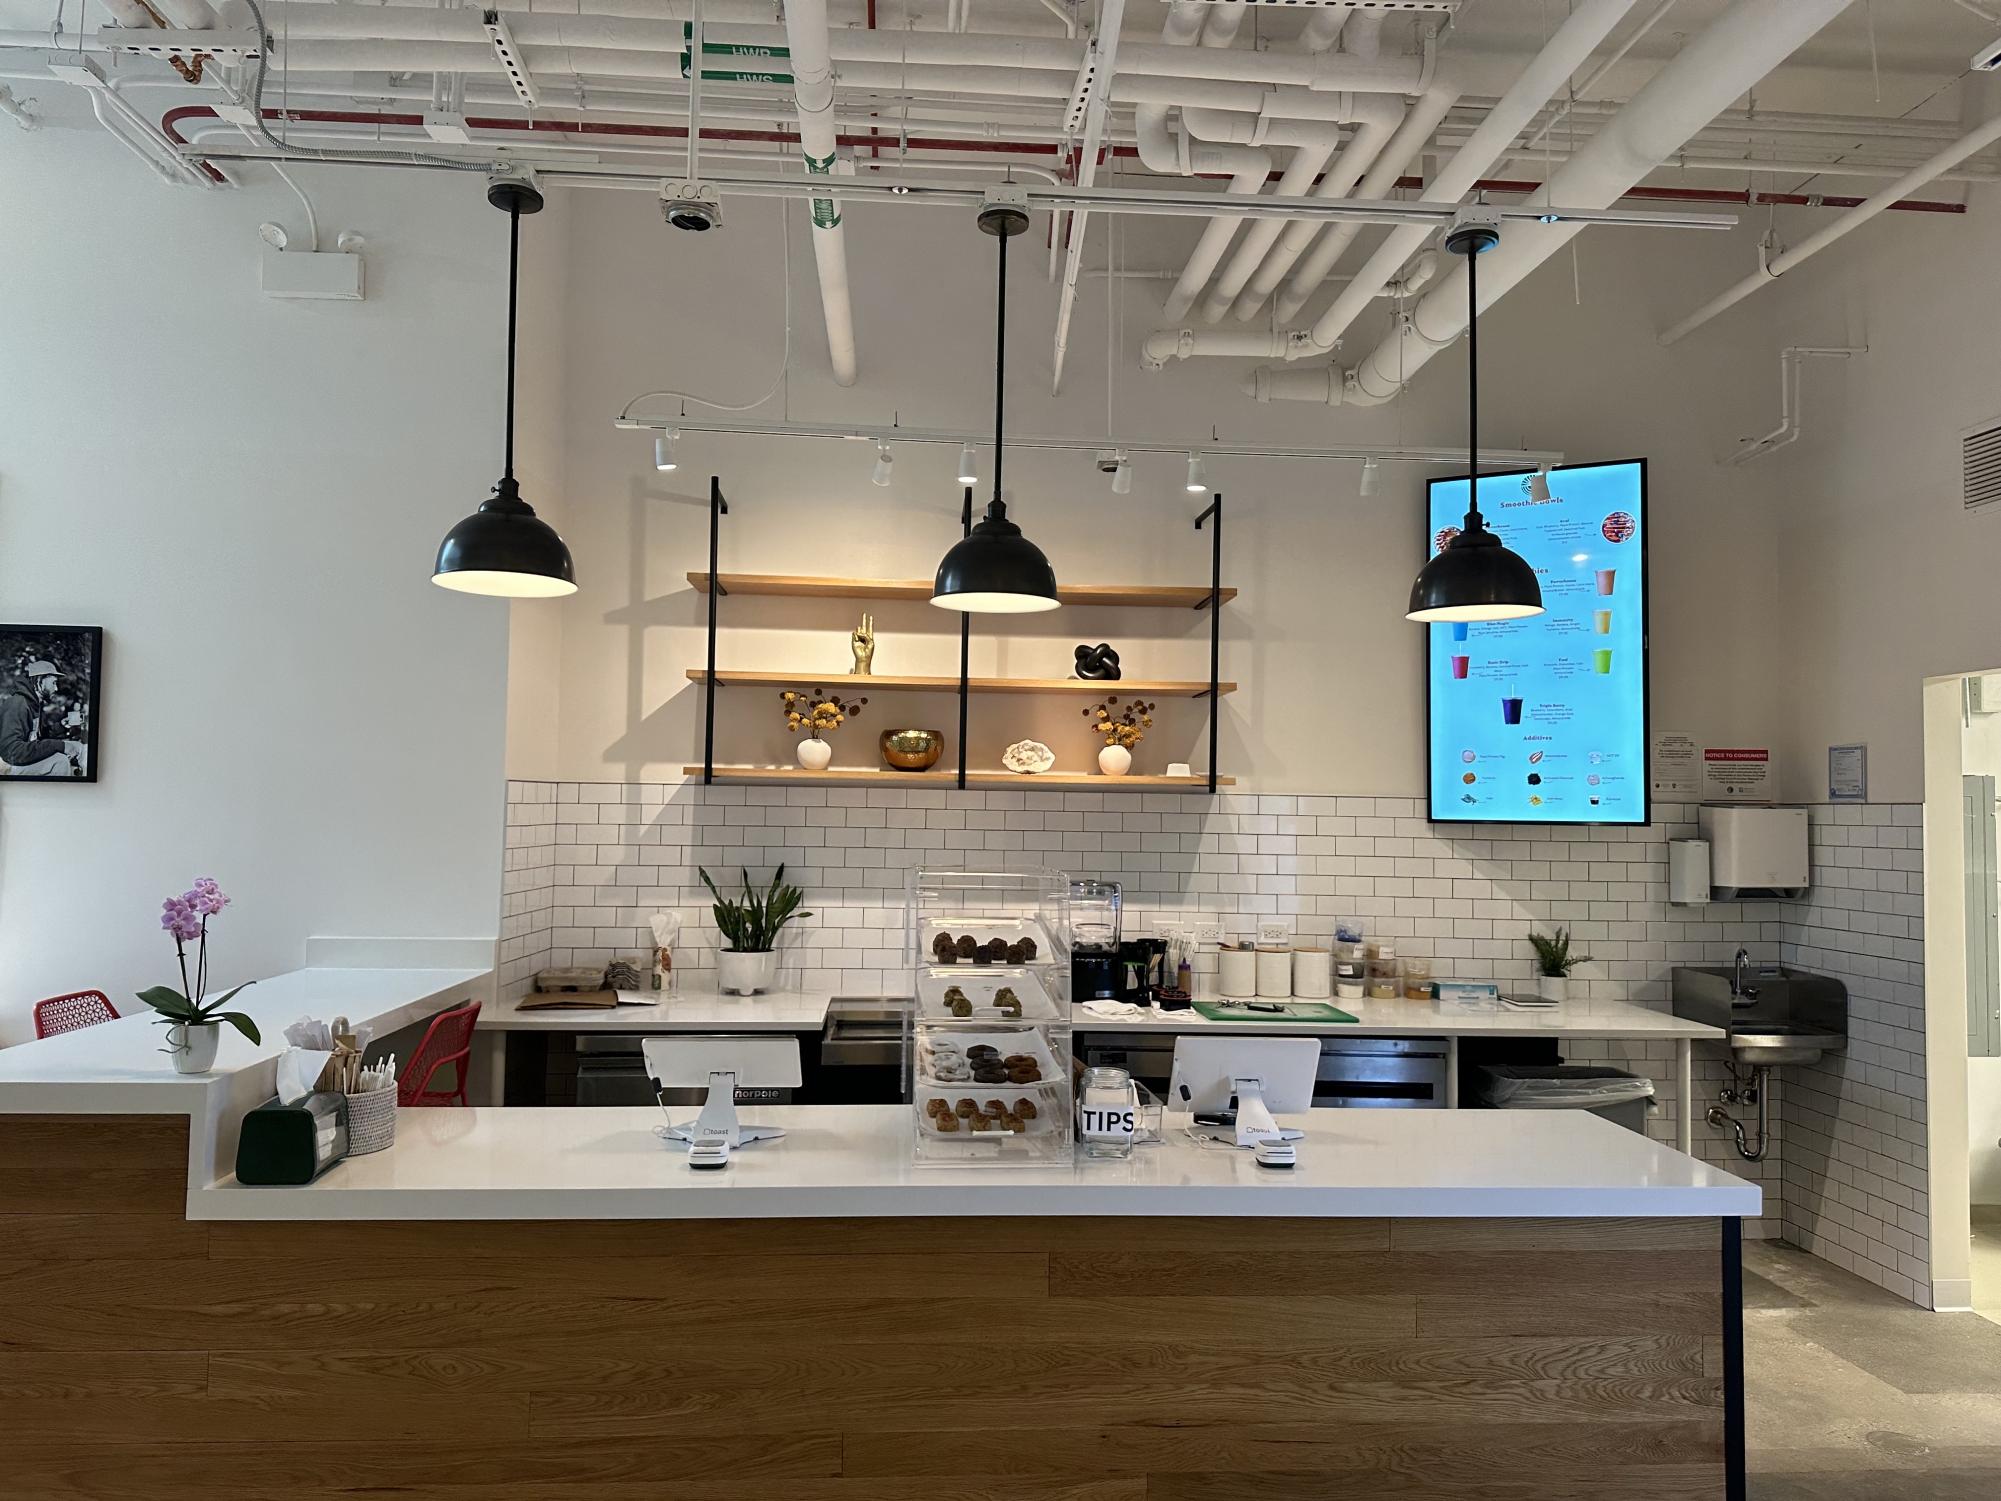 校园北部迎来全新的植物性咖啡厅“Sundrip”开业